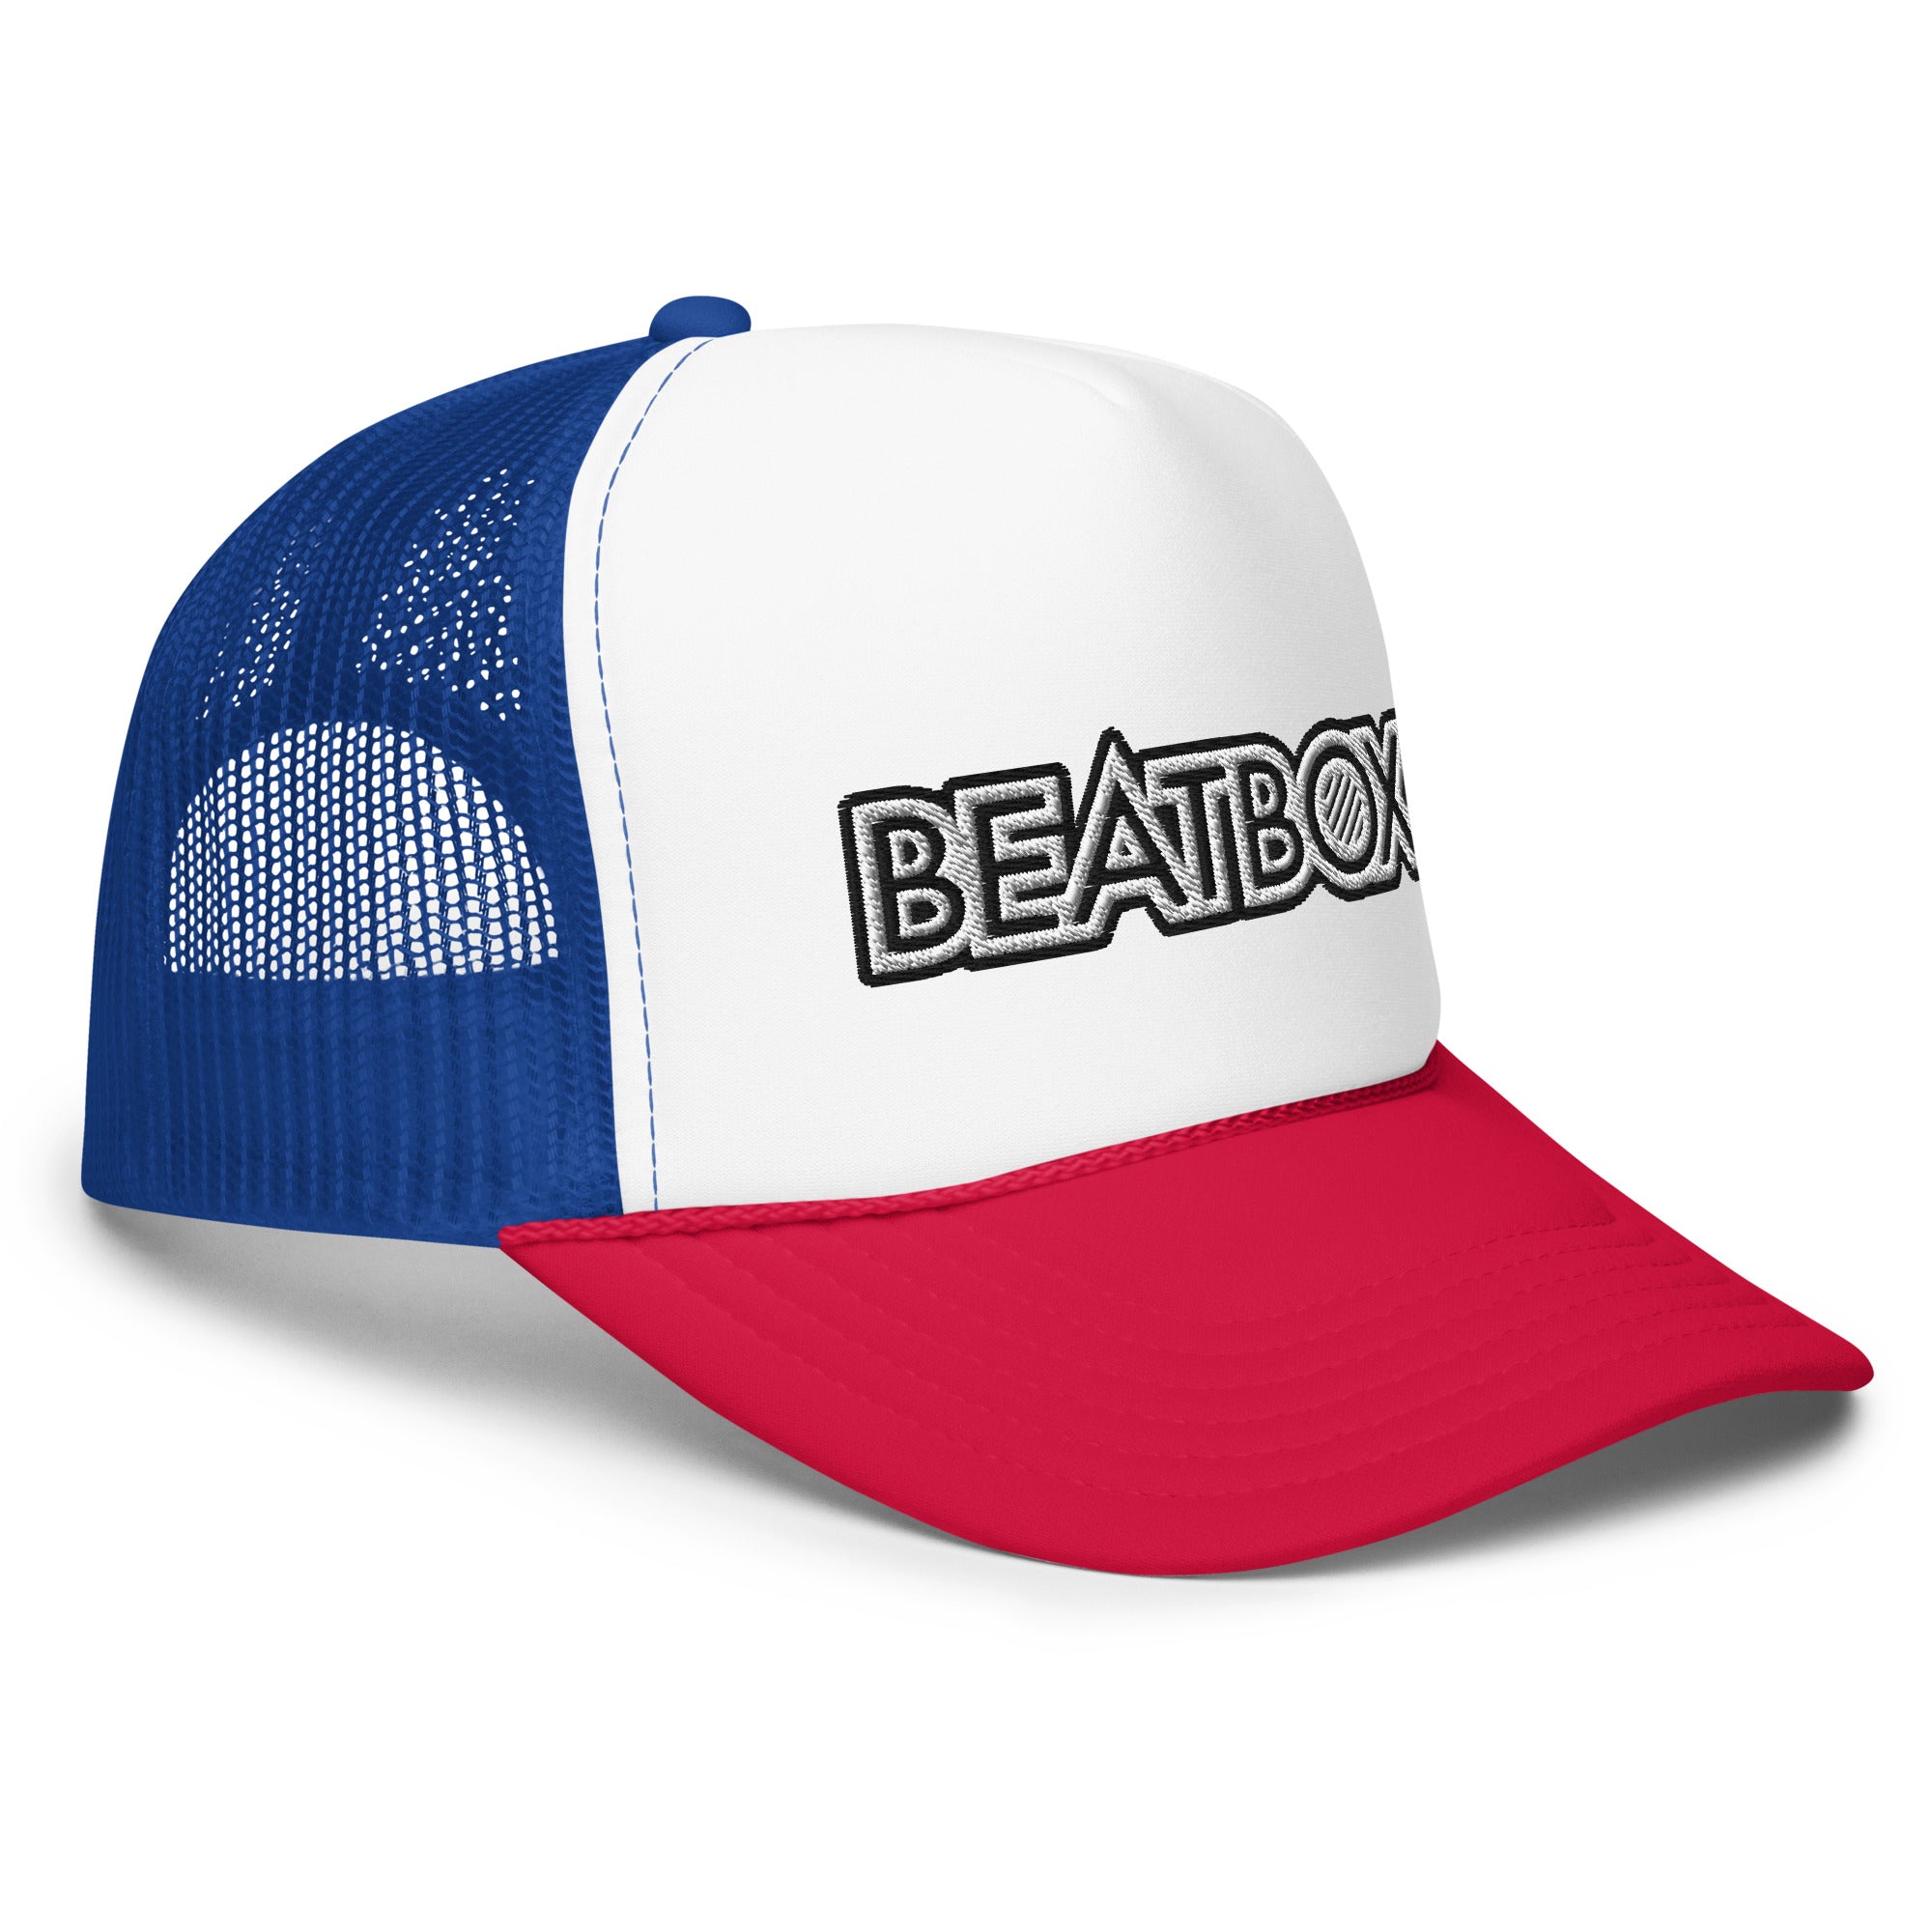 BeatBox Foam trucker hat